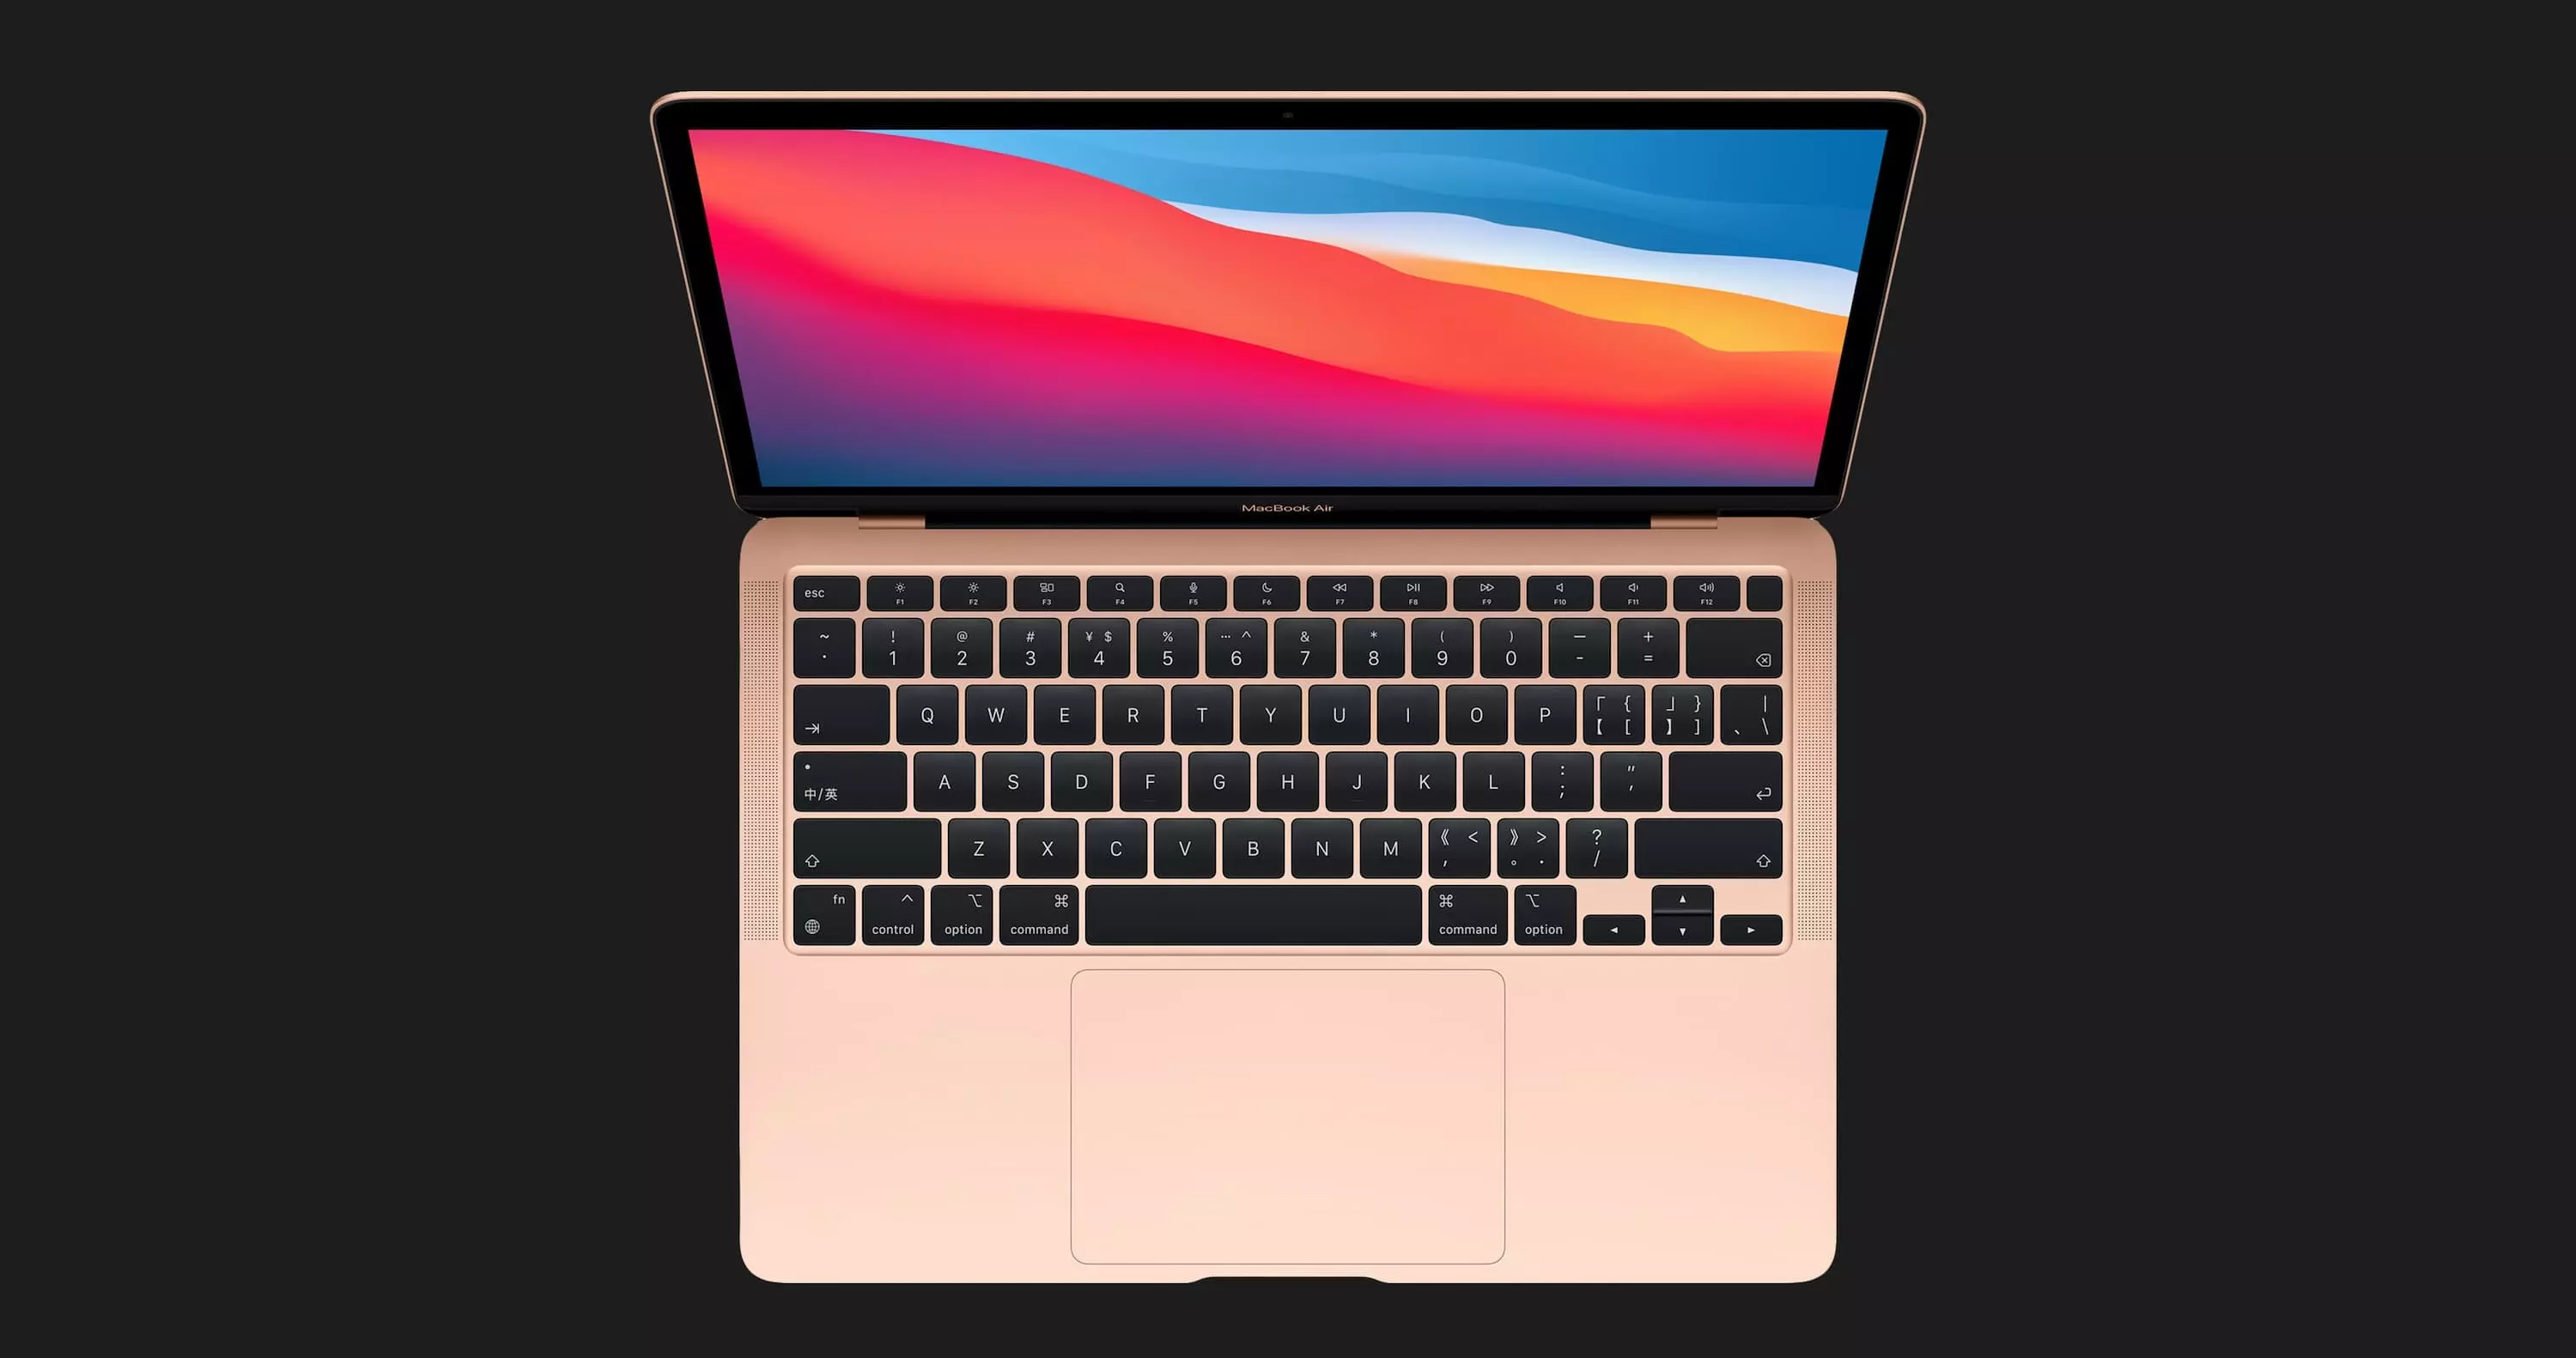 б/у Apple MacBook Air 13, 2019, Space Gray (256GB) (MVFJ2) (Идеальное состояние)